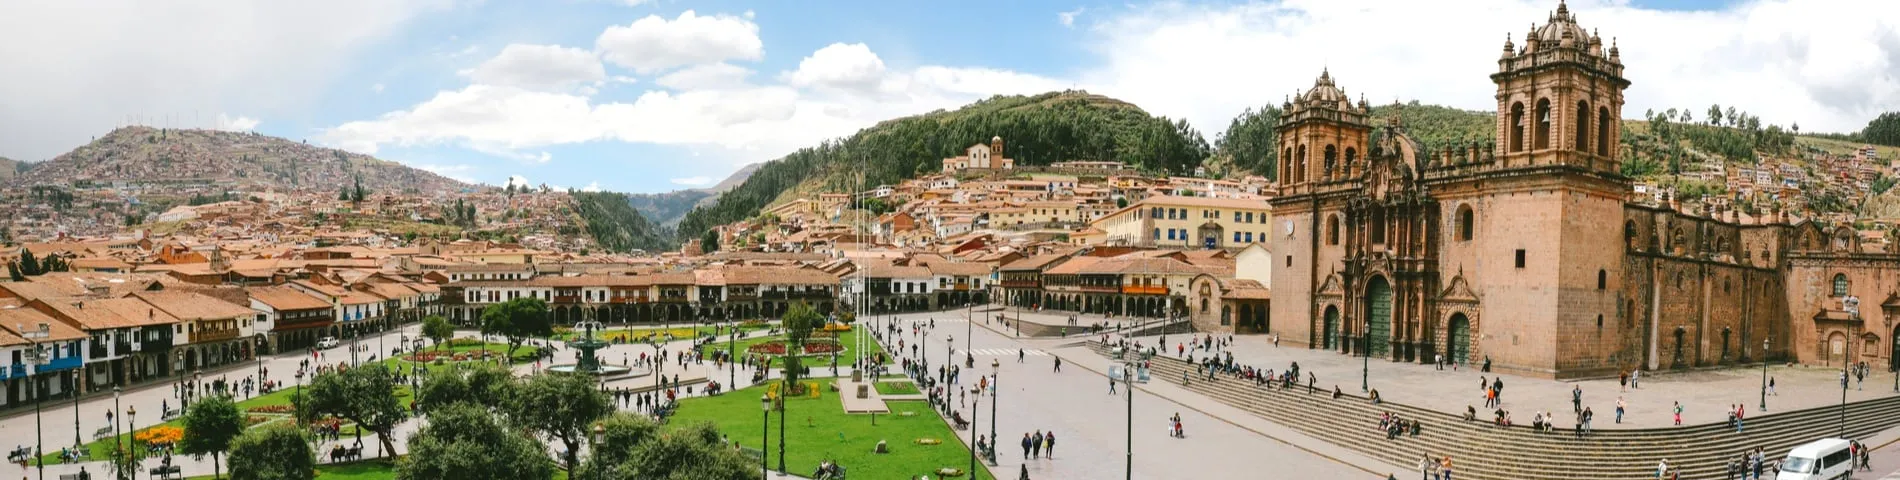 กุสโก (Cuzco) - 